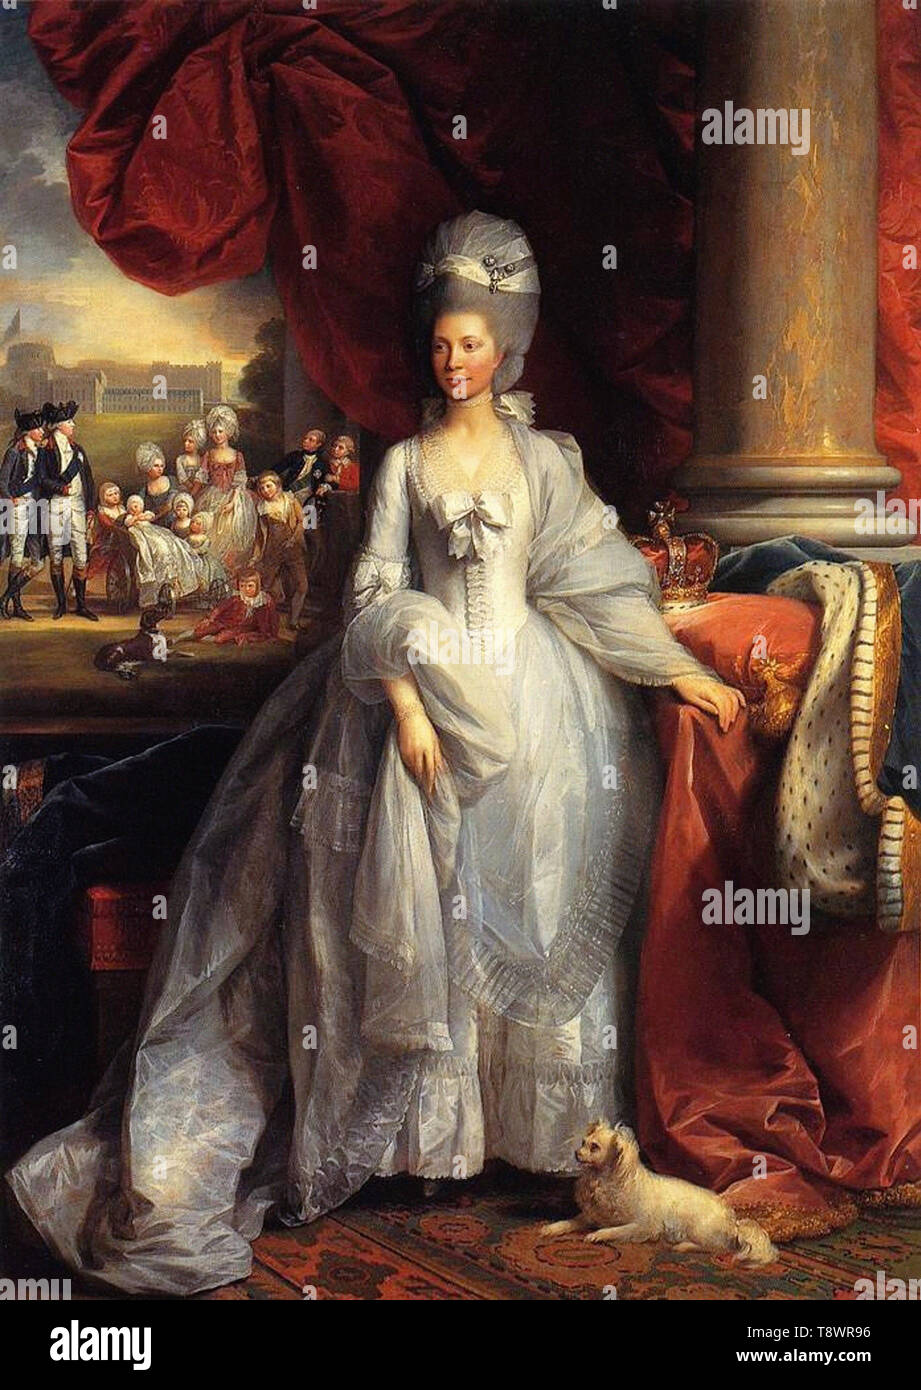 Benjamin West - Ritratto Queen Charlotte Regno Unito con Windsor Royal famiglia 1779 Foto Stock